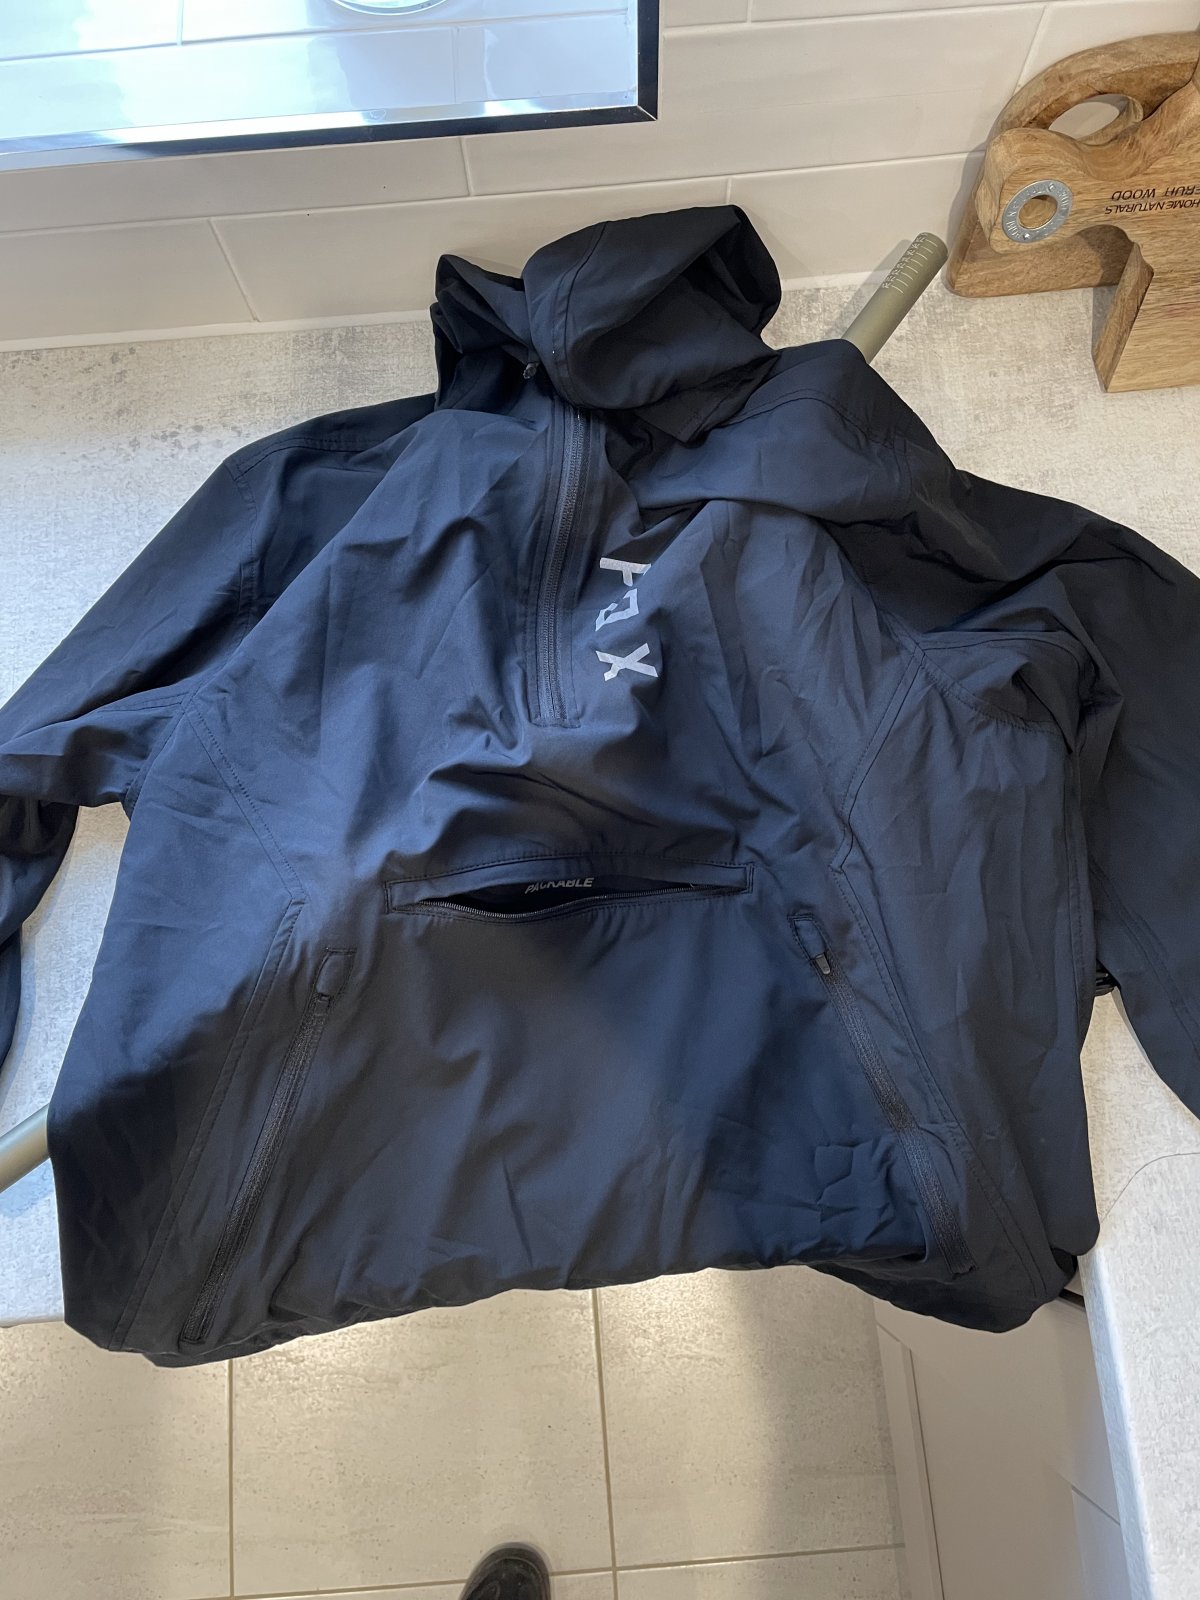 Sold - Fox Rain smock/hoodie | EMTB Forums